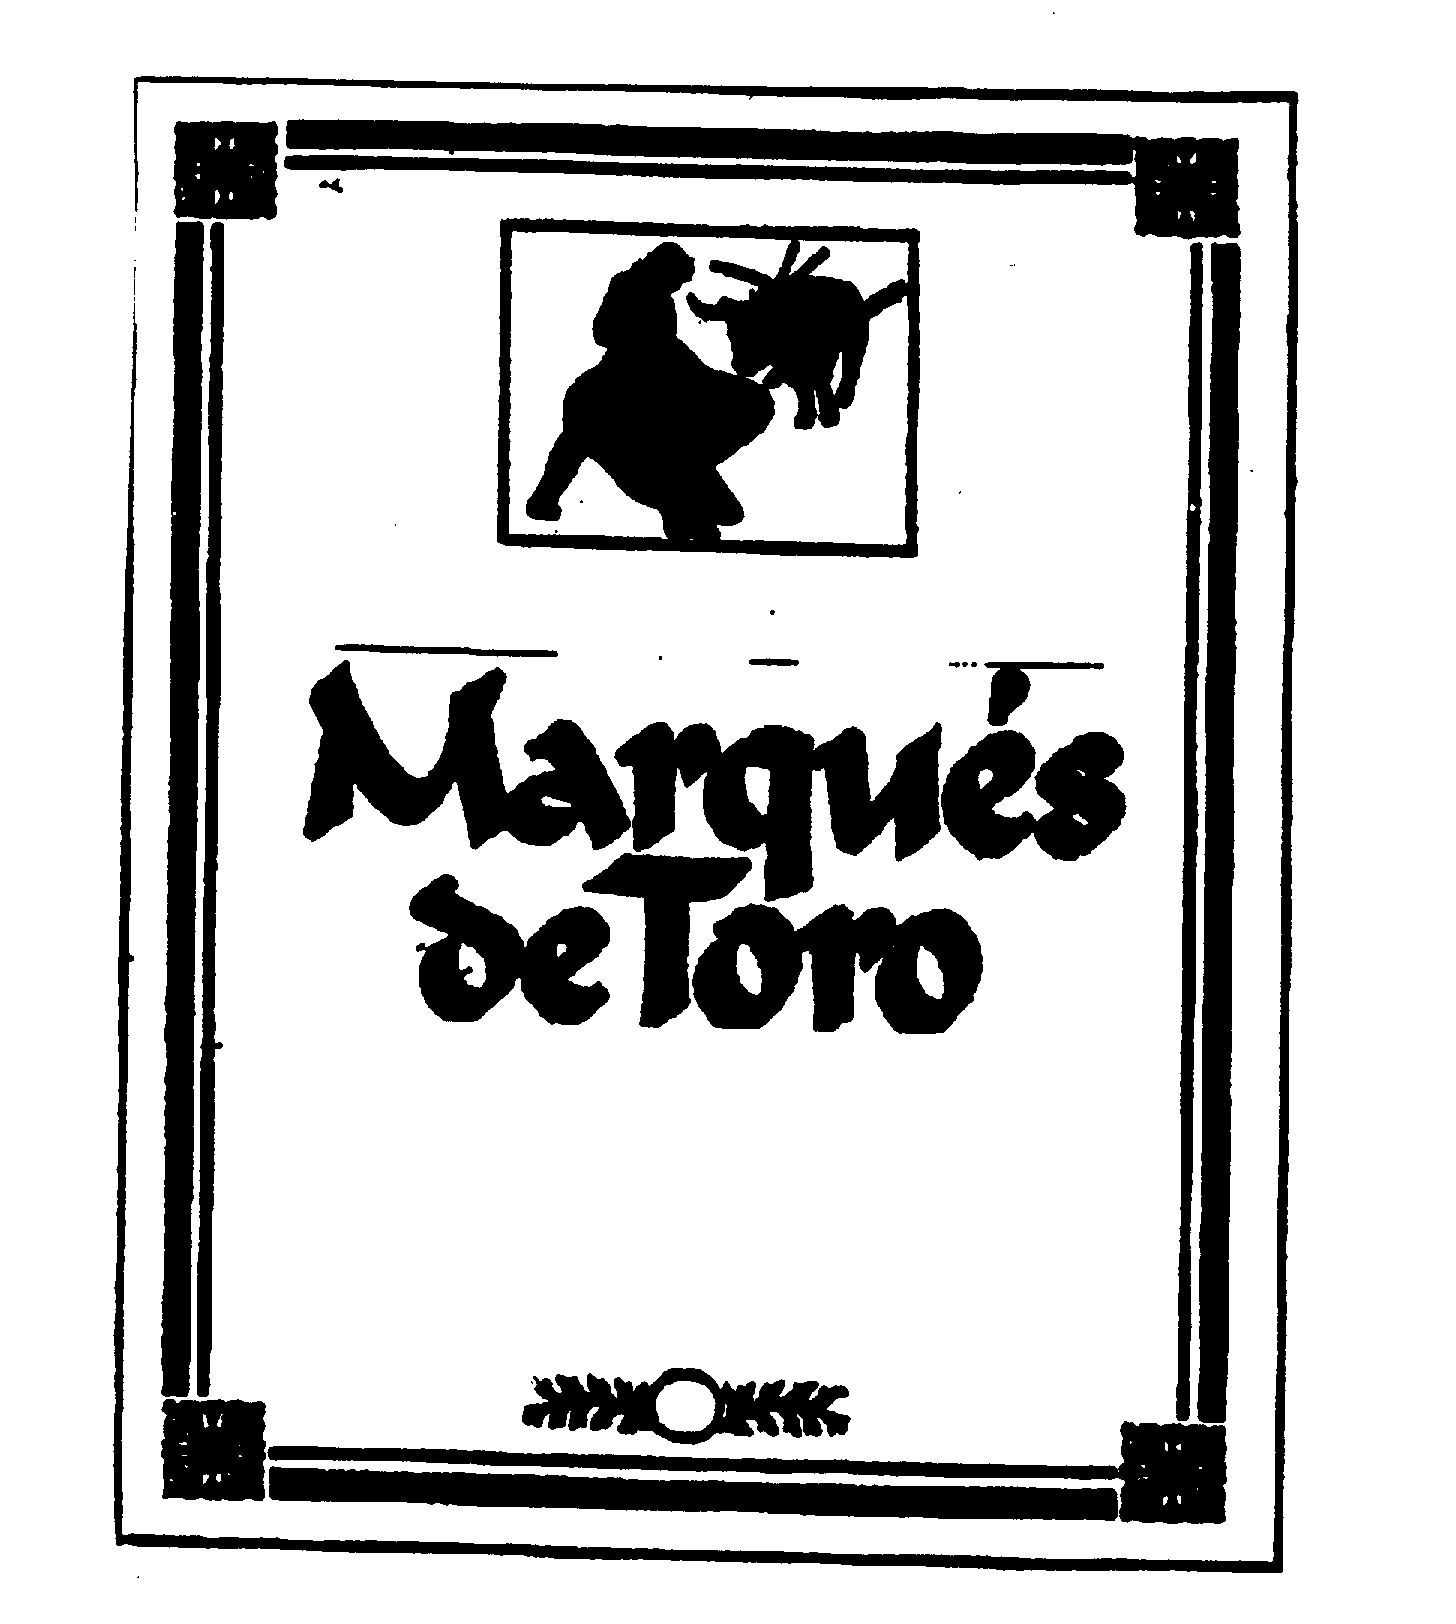  MARQUES DE TORO